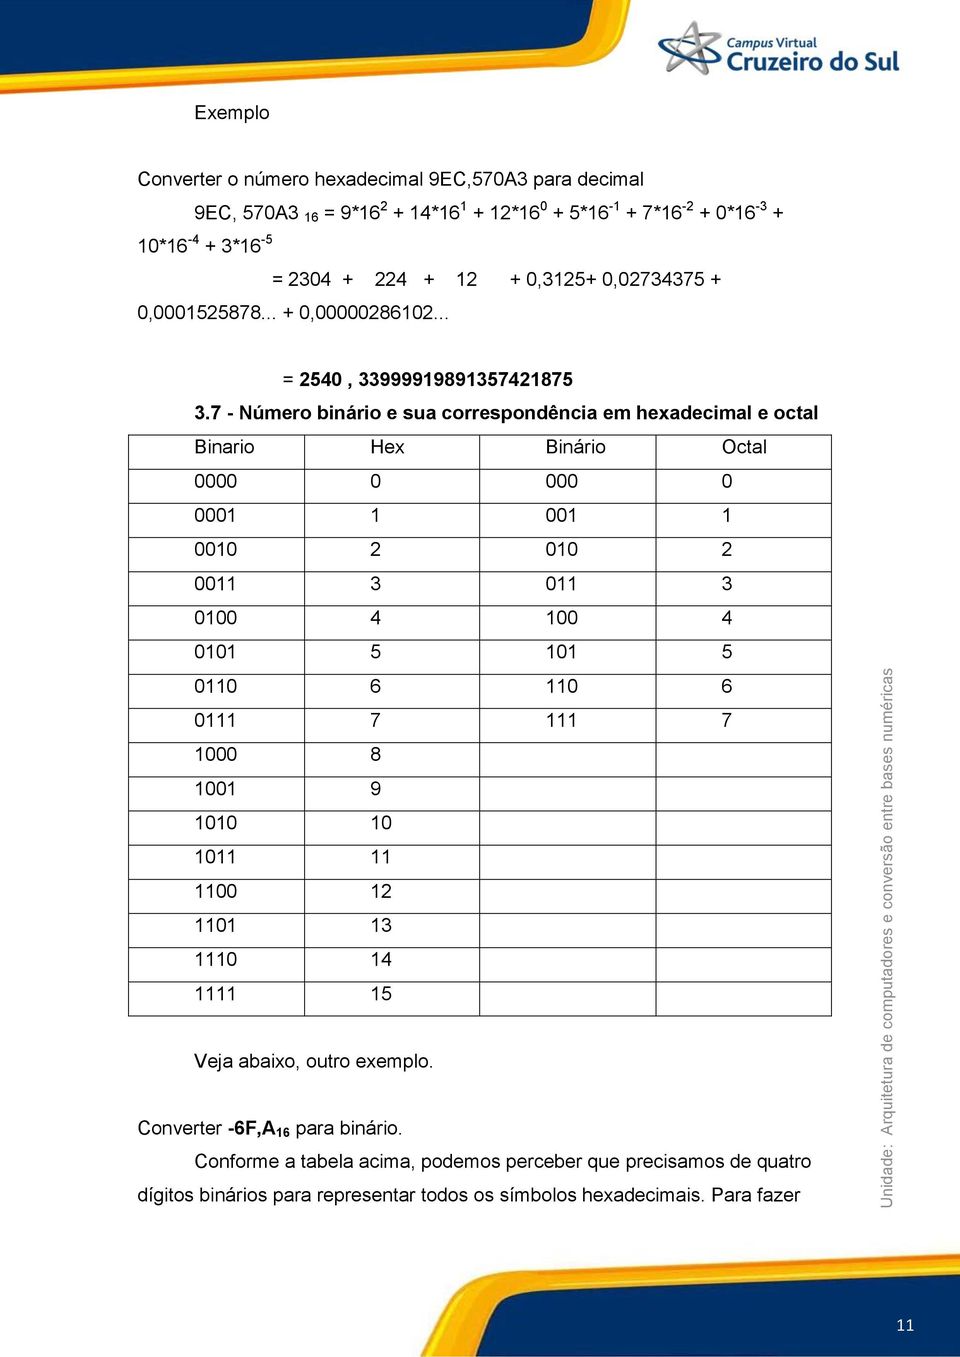 7 - Número binário e sua correspondência em hexadecimal e octal Binario Hex Binário Octal 0000 0 000 0 0001 1 001 1 0010 2 010 2 0011 3 011 3 0100 4 100 4 0101 5 101 5 0110 6 110 6